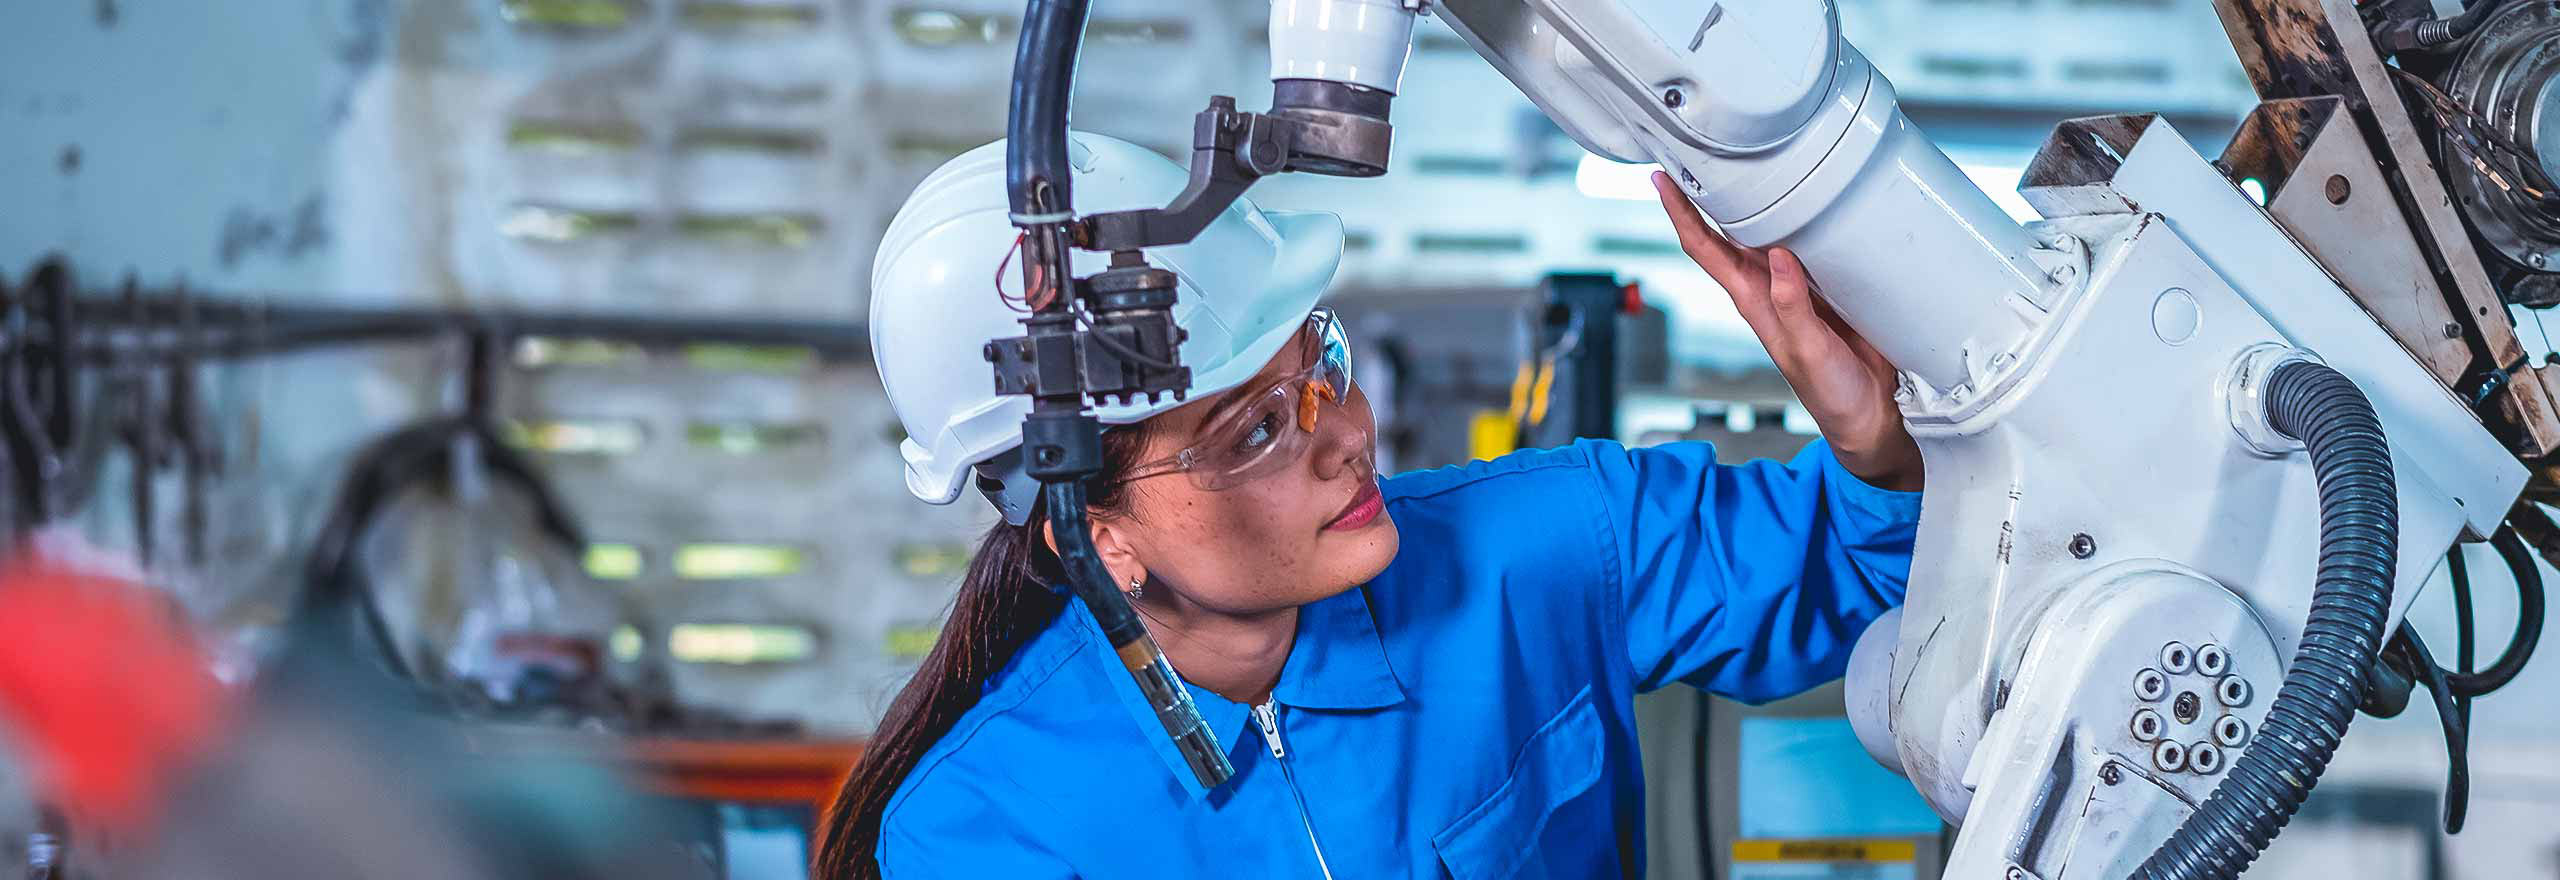 Une travailleuse tient une tablette et vérifie une partie d’une machine robotisée sur son lieu de travail